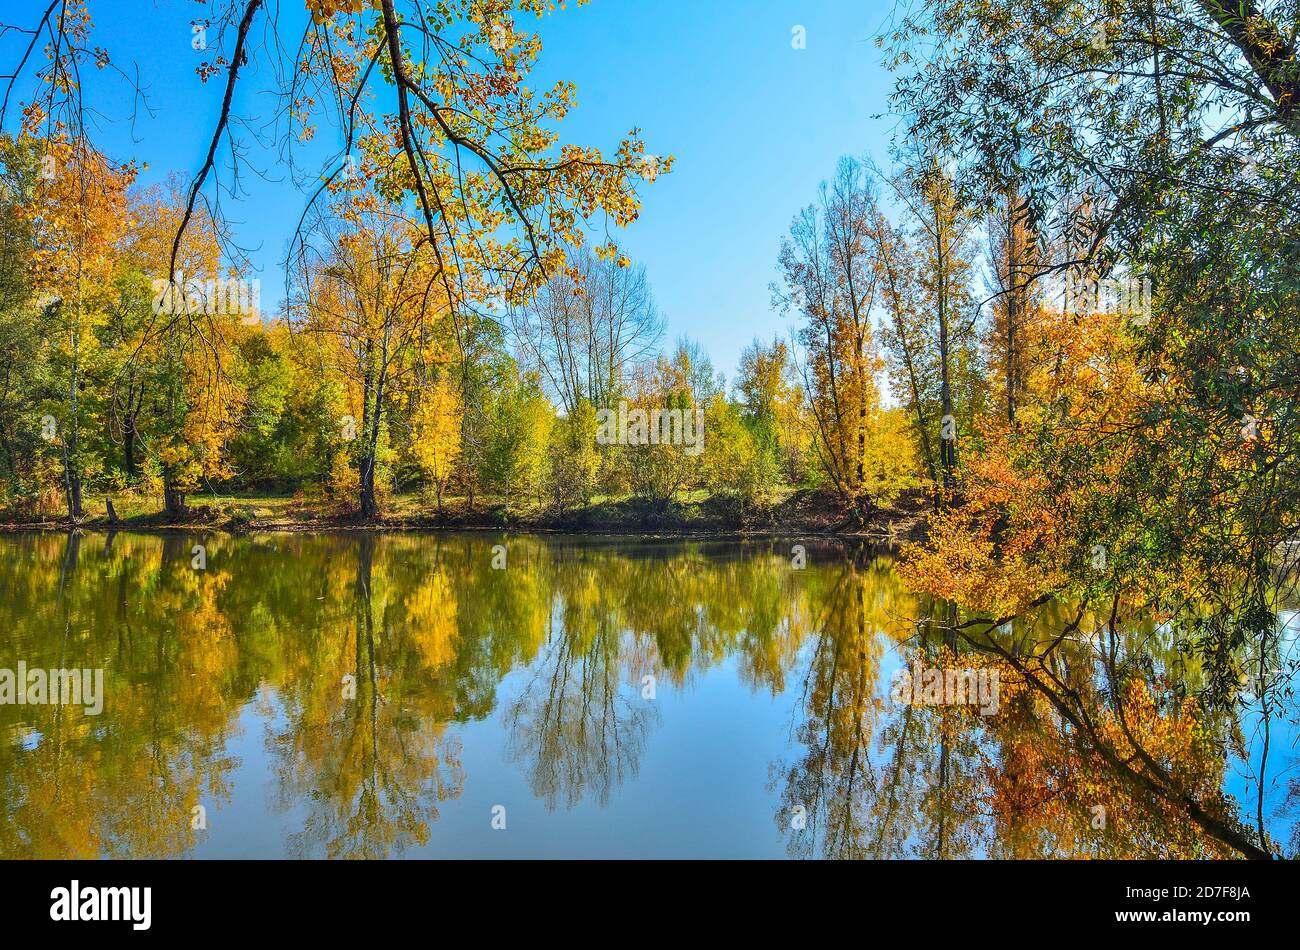 Goldene Laub Herbst Bäume rund um den See im blauen Wasser spiegelt - Herbst malerische Landschaft an warmen und sonnigen September Wetter mit blauem Sk Stockfoto